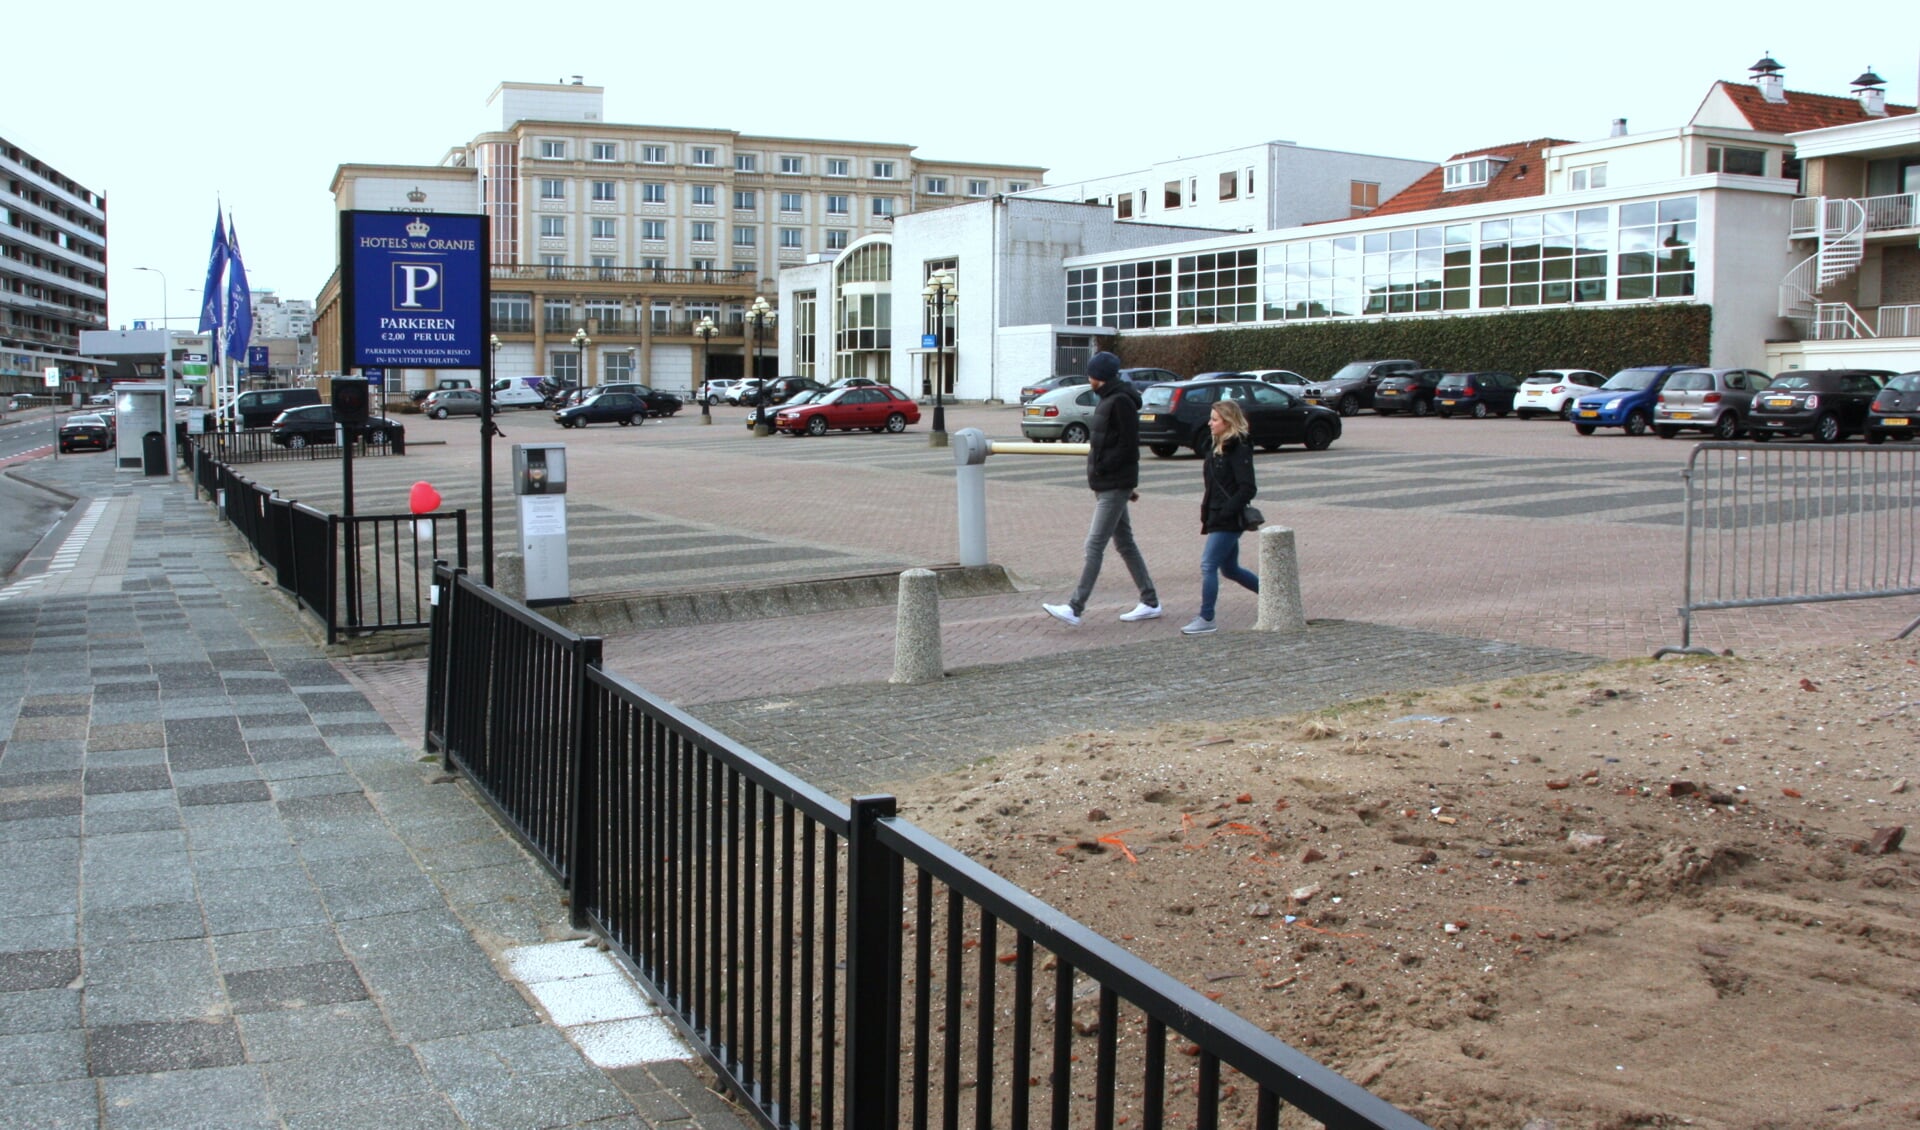 Op de plek van deze 100 parkeerplaatsen komt ‘Residence van Oranje’ met 500 ondergrondse parkeerplekken.